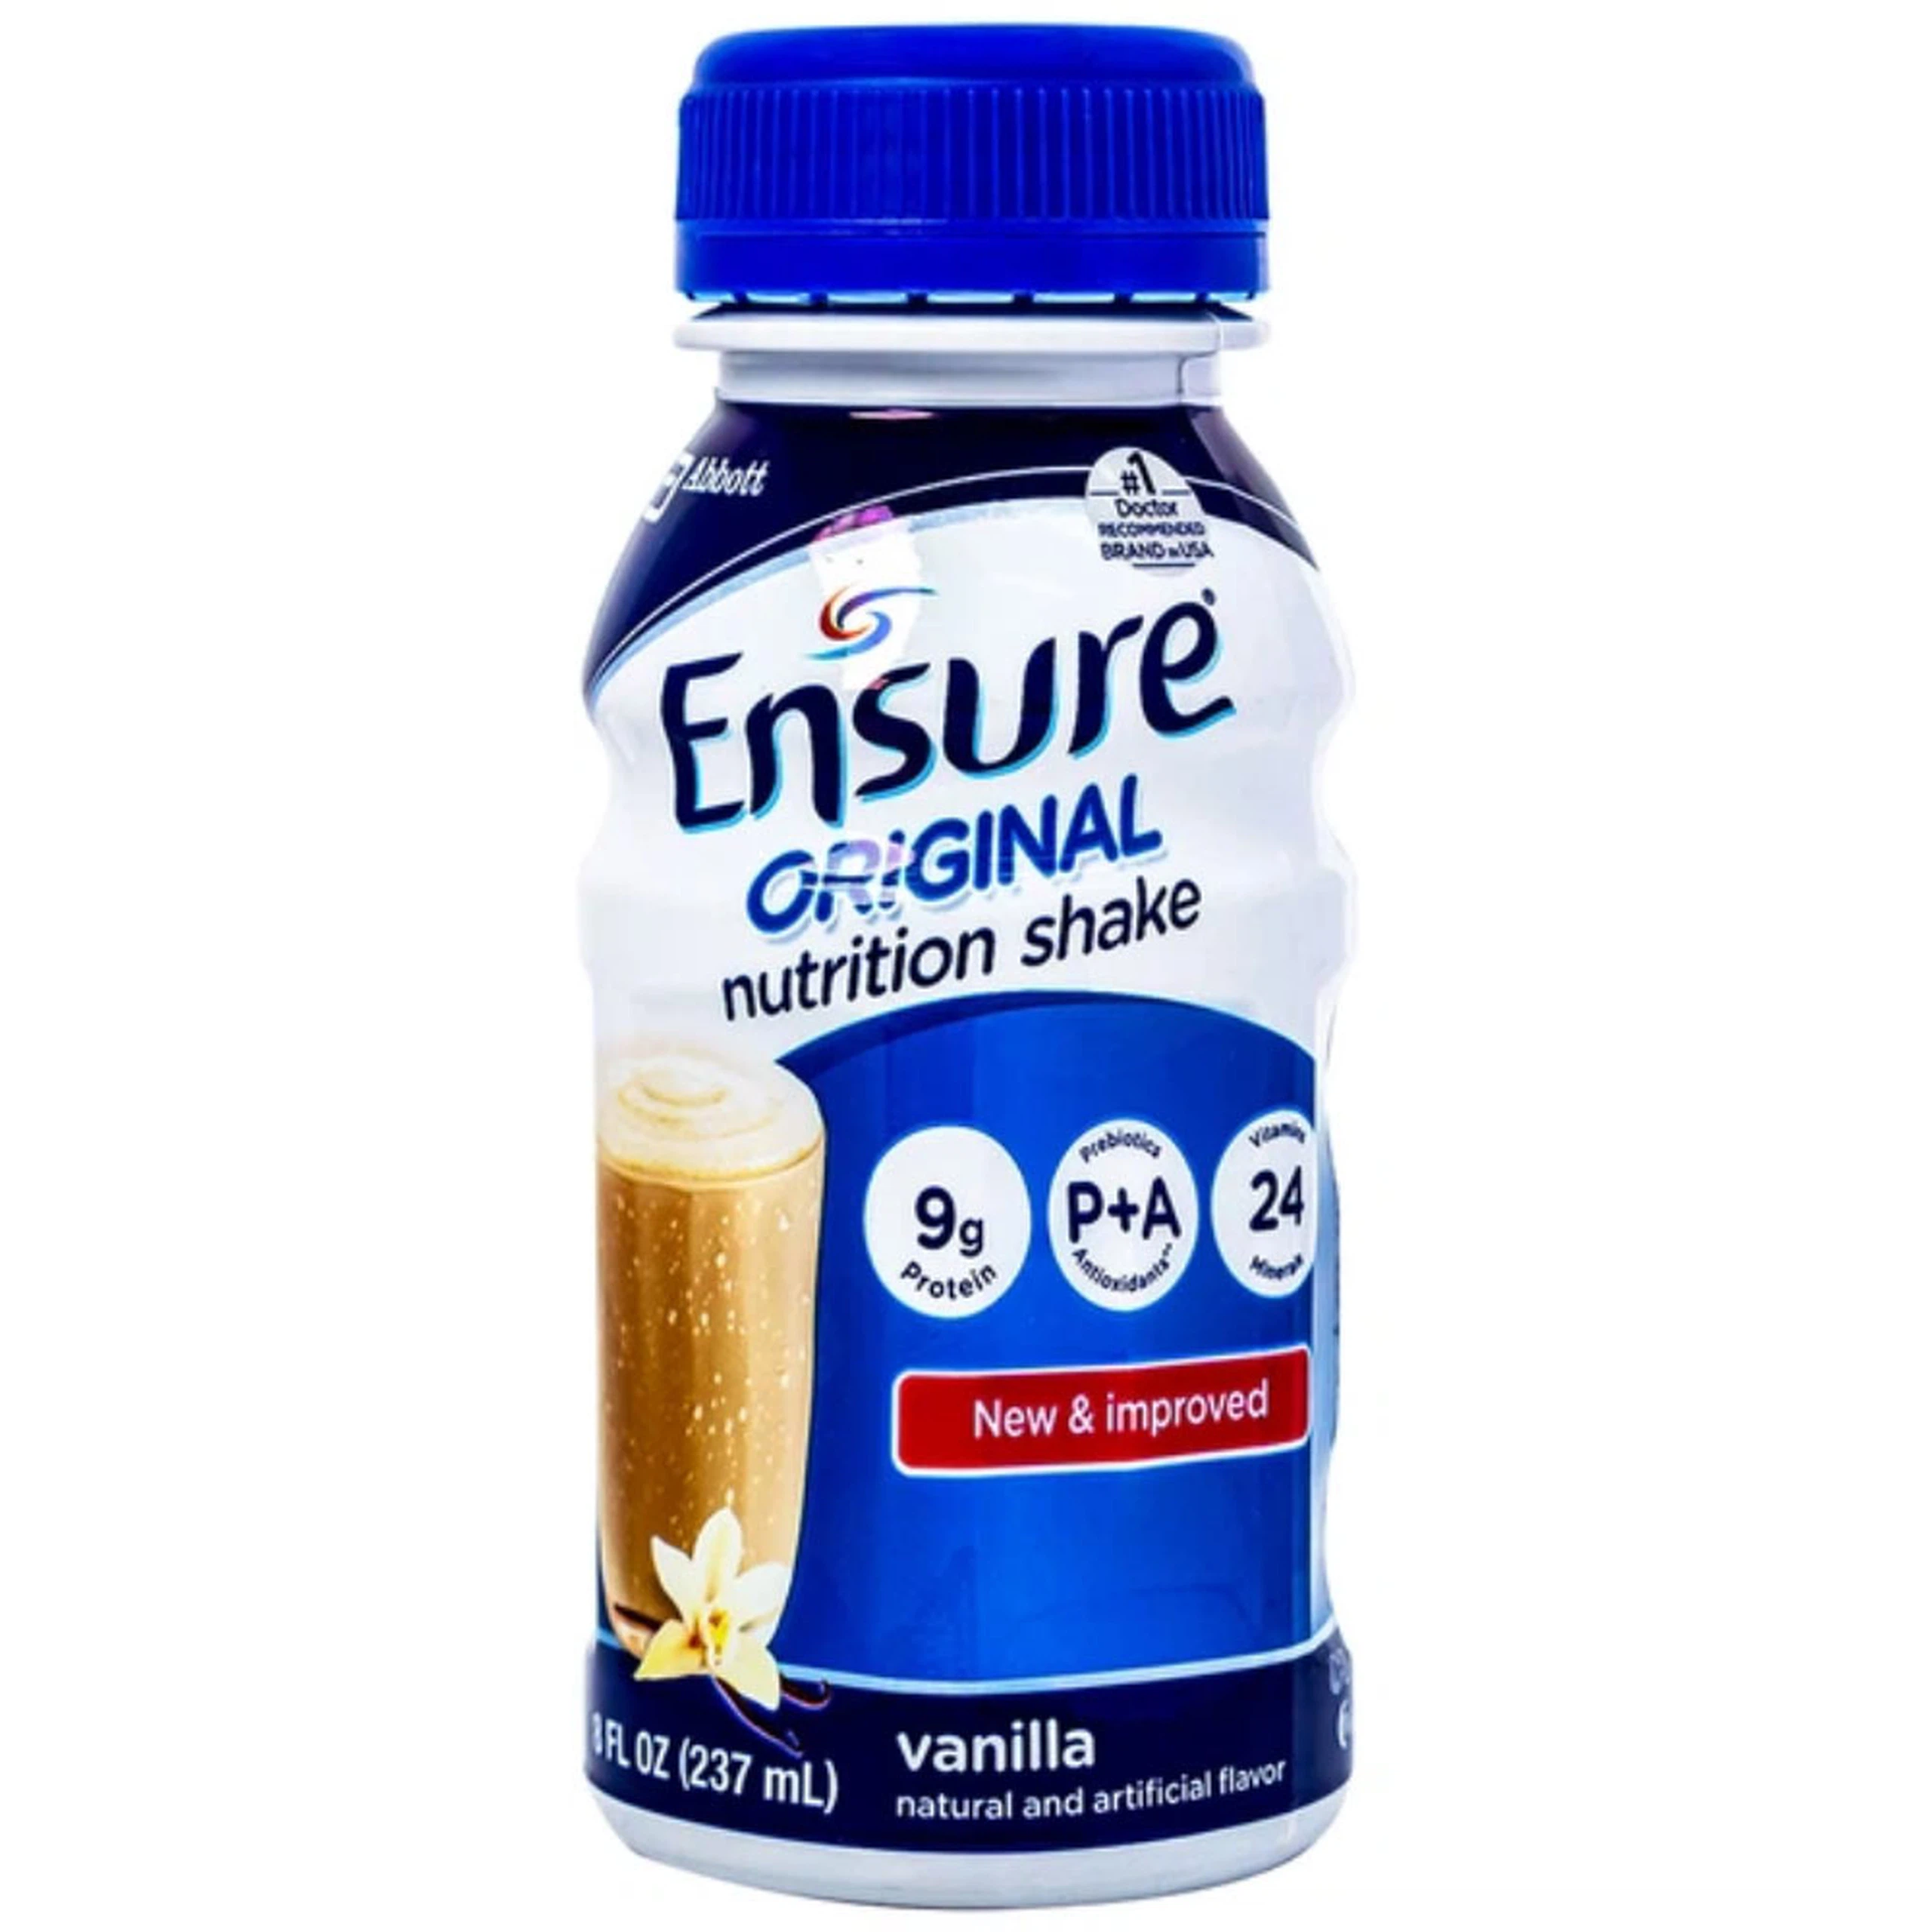 Sữa Ensure Original Abbott hương vani, bổ sung dinh dưỡng, hỗ trợ tiêu hóa (4 lốc x 6 chai x 237ml) 